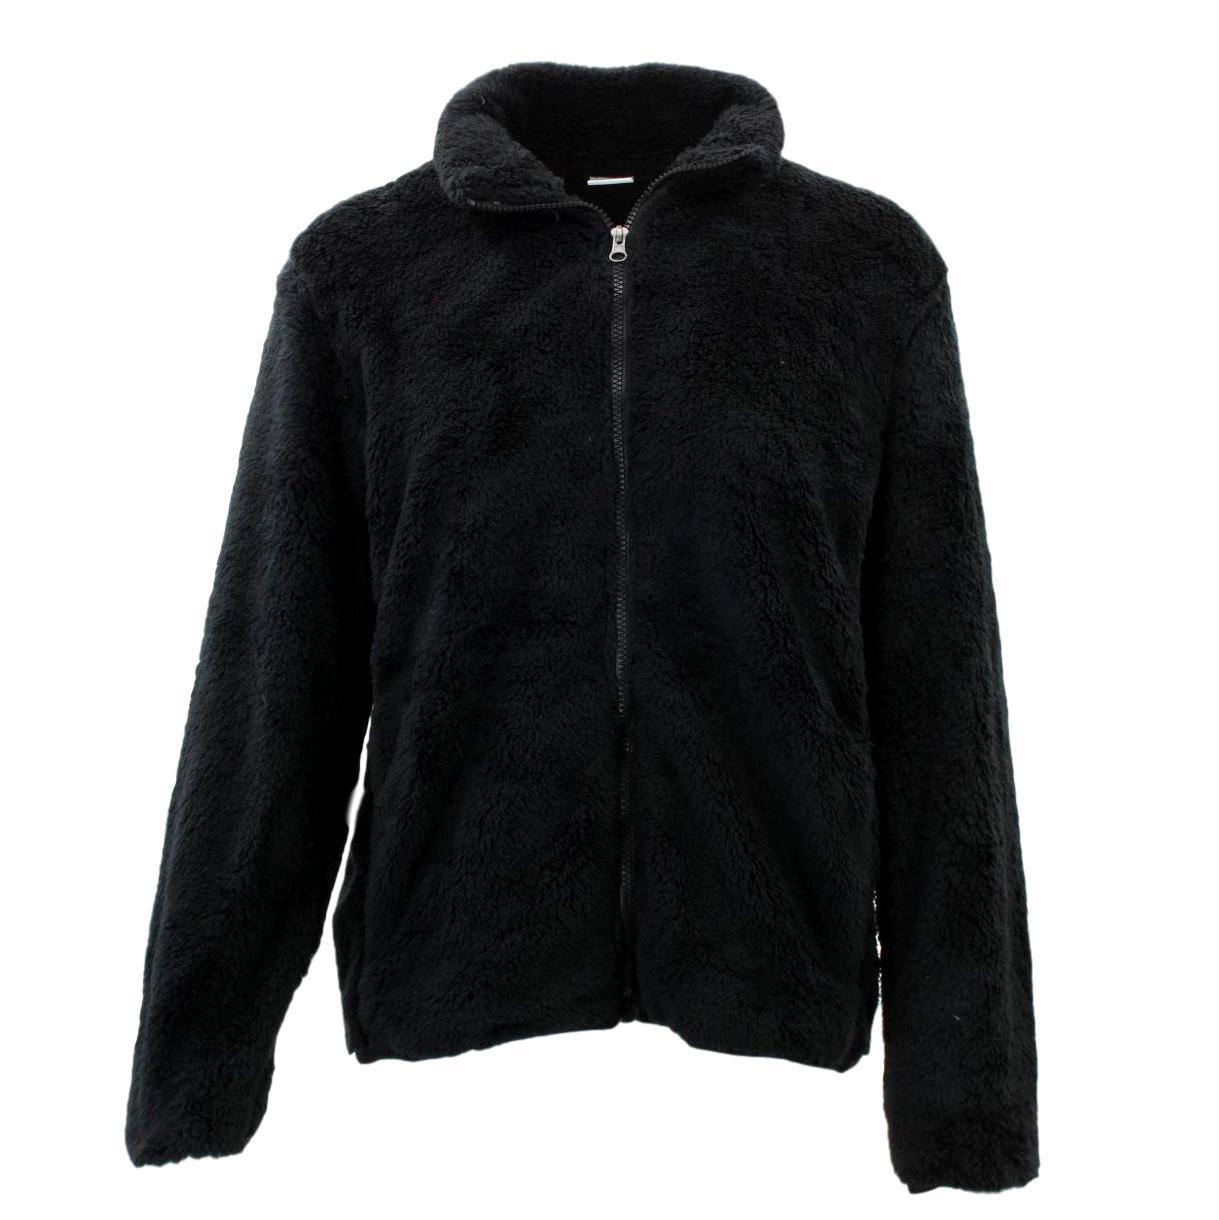 FIL Women's Sherpa Jacket Fleece Winter Warm Soft Teddy Casual Coat Zip Up